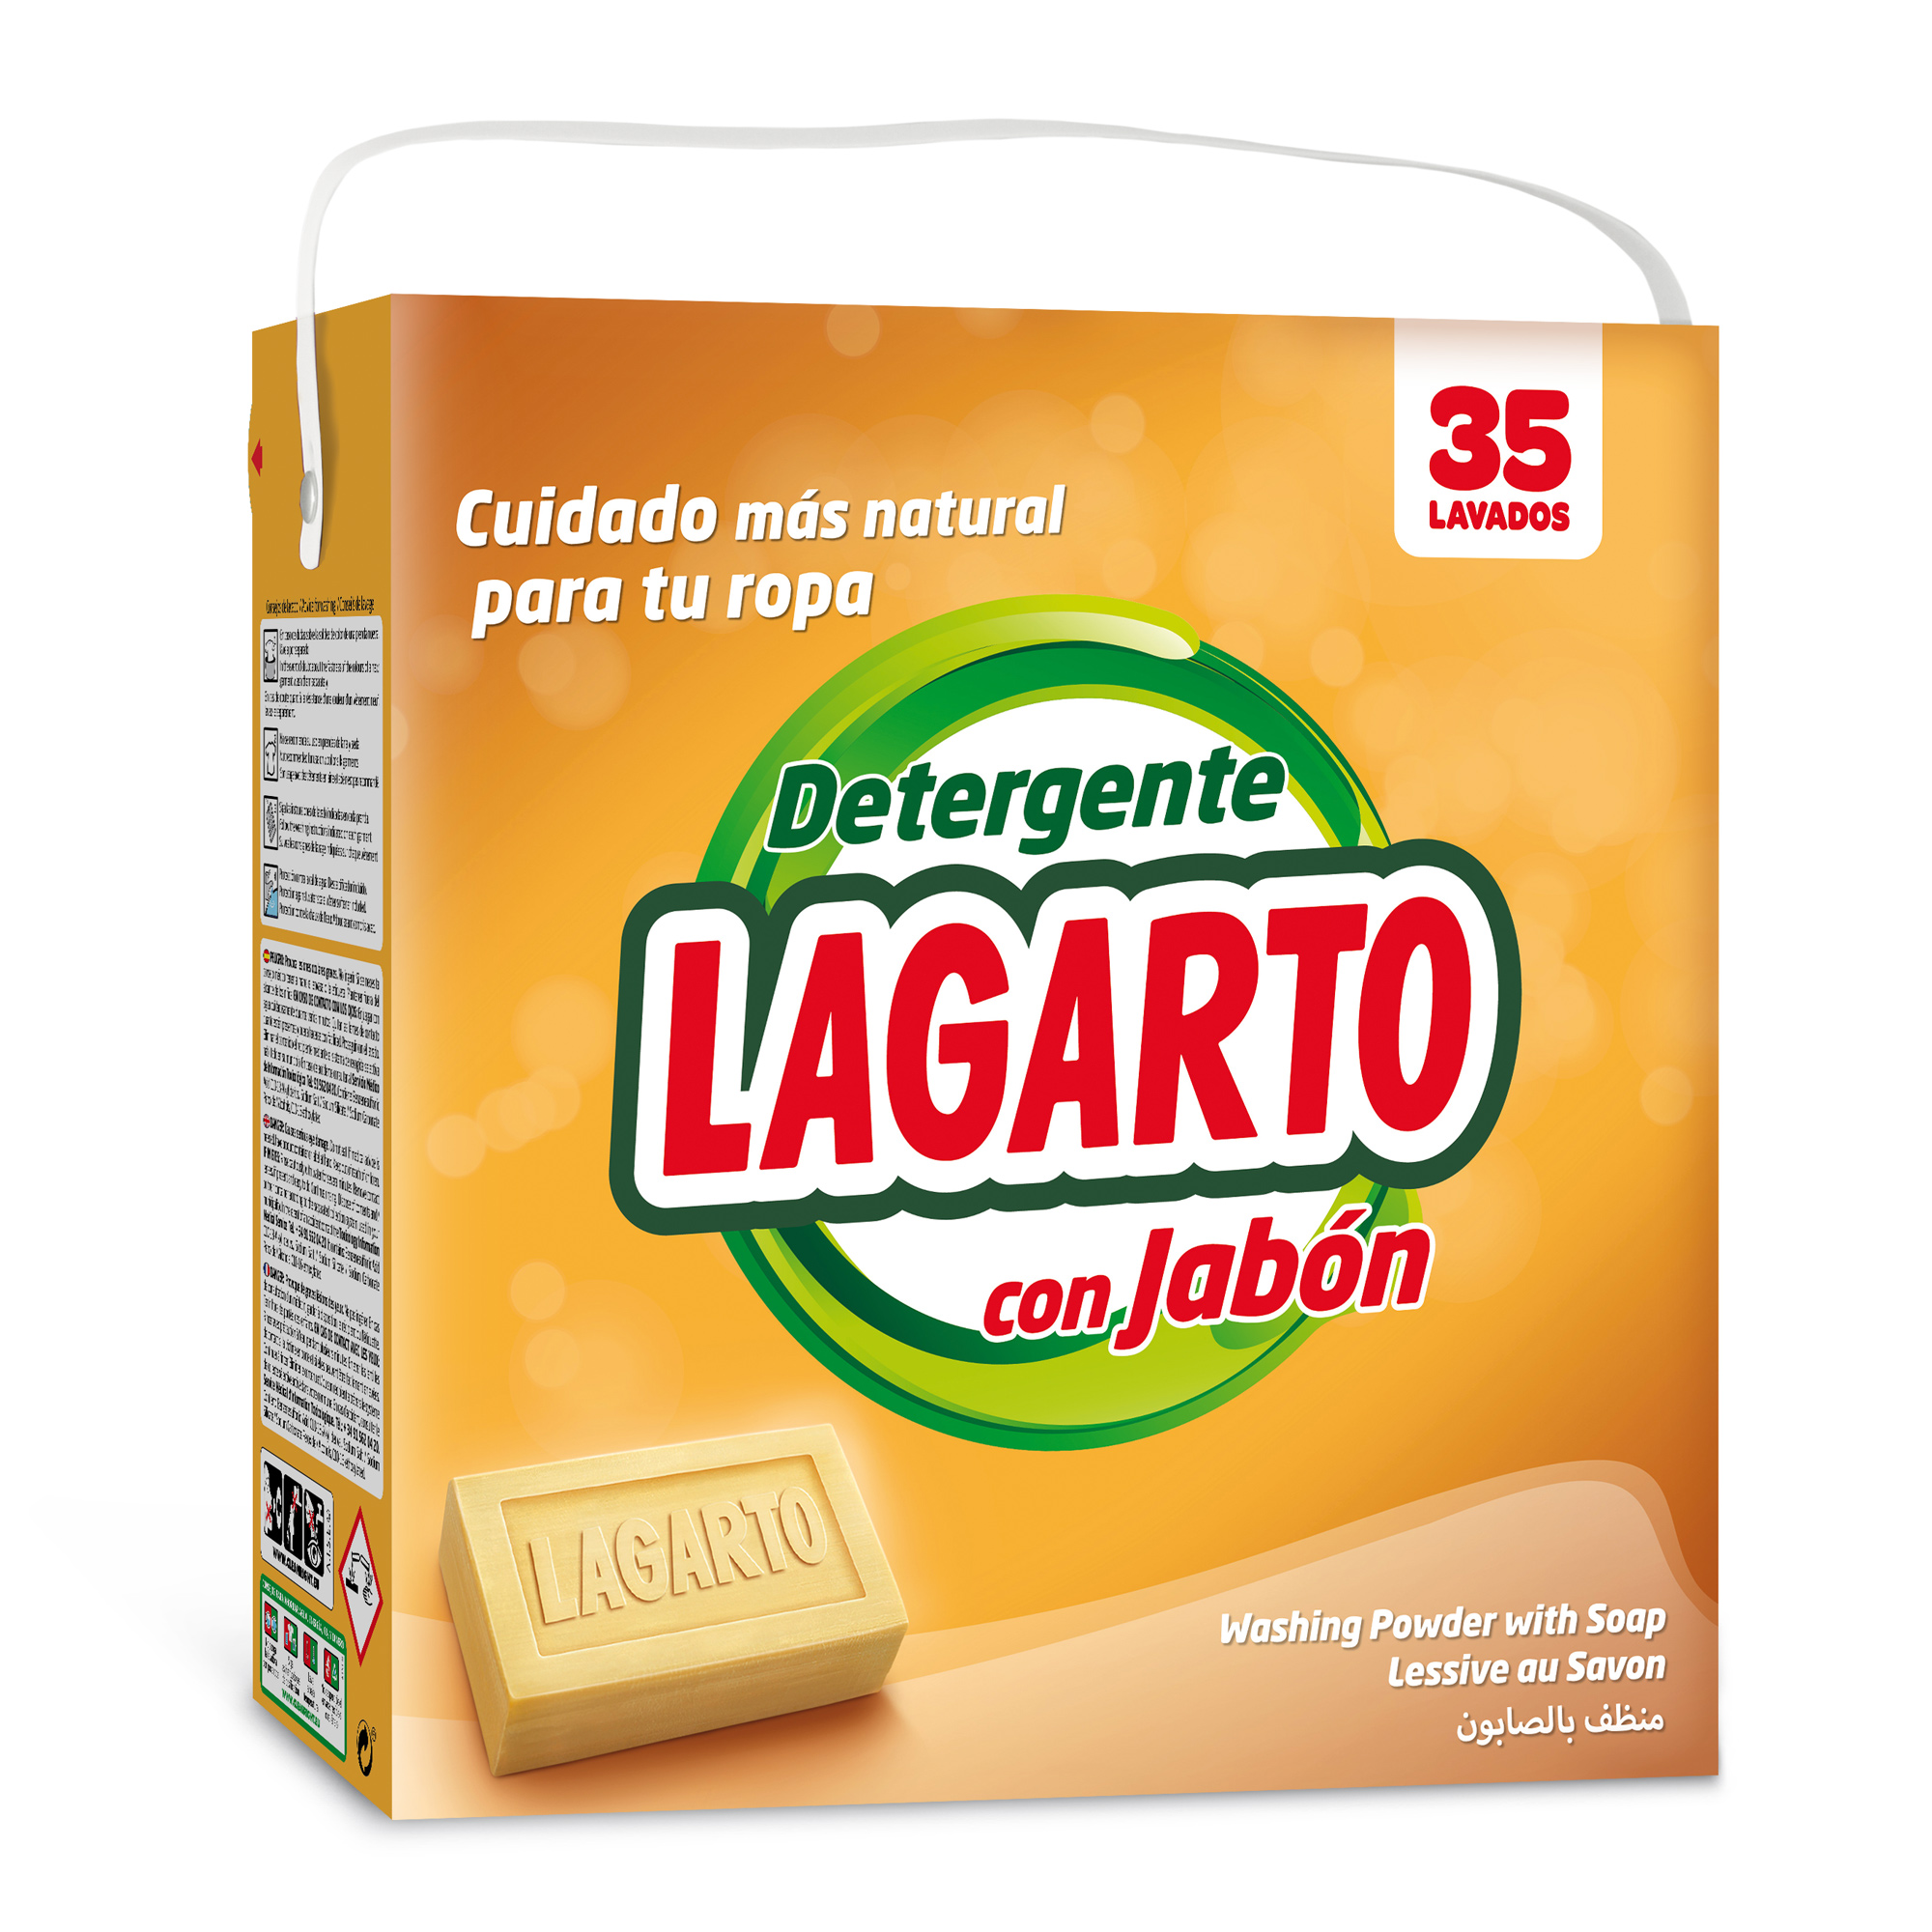 Detergente Lagarto al Jabón 35 Lavados